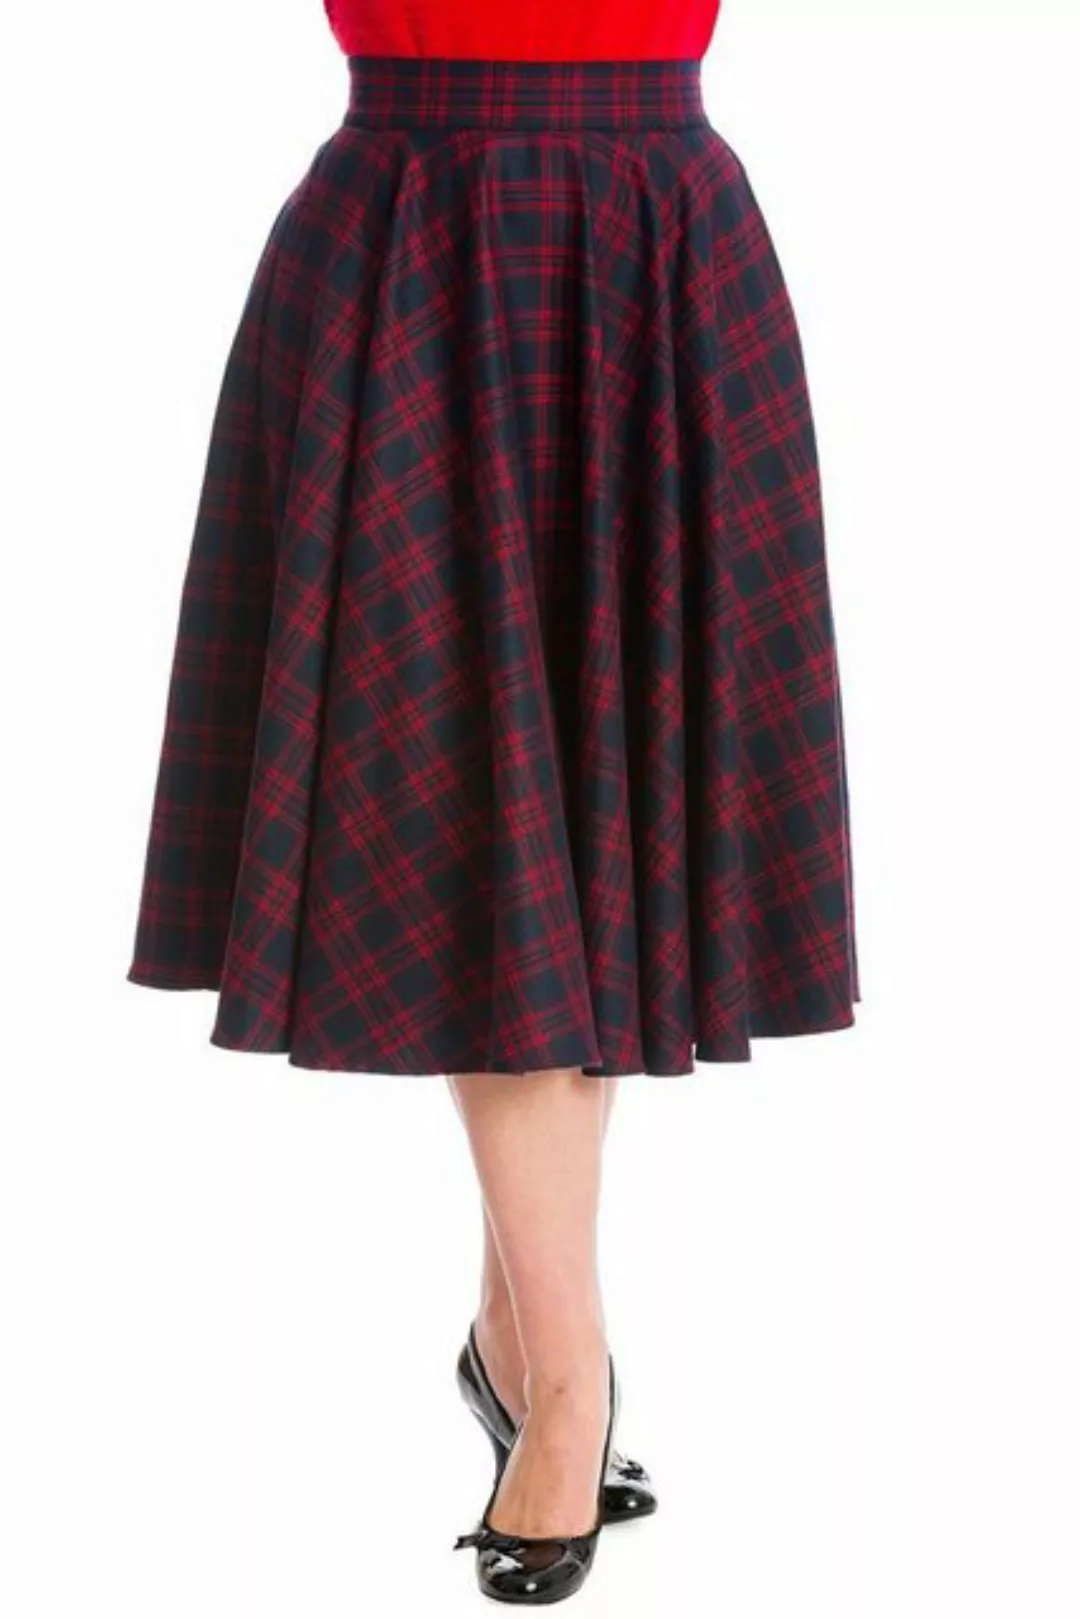 Banned A-Linien-Rock Adore Her Rot Navy Kariert Retro Vintage Swing Skirt günstig online kaufen